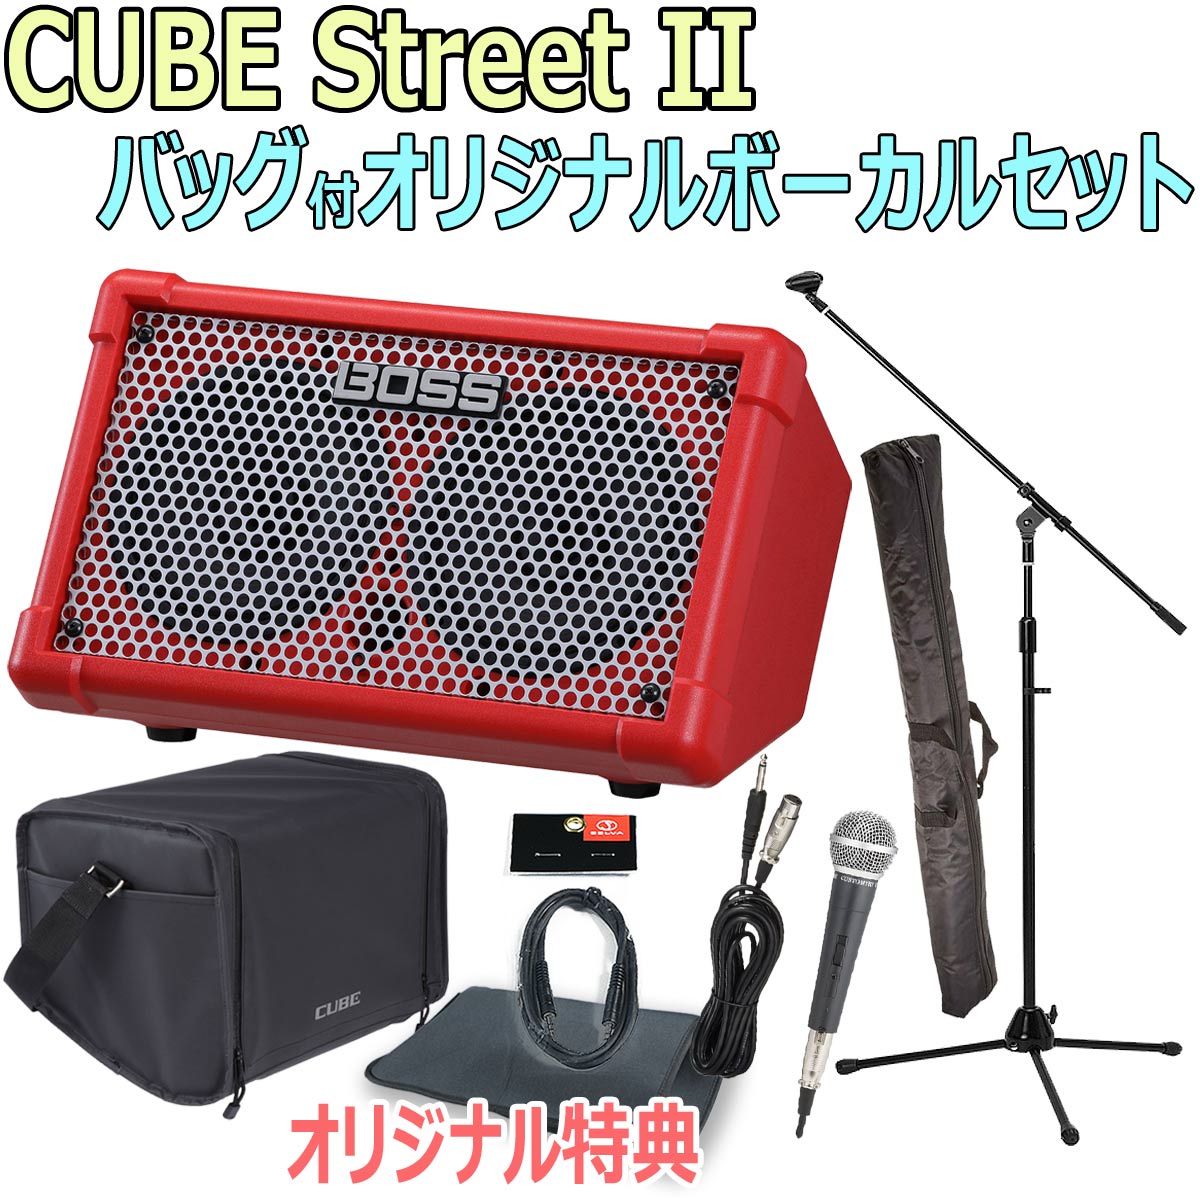 【あす楽対象商品】BOSS / CUBE Street II Red -純正バッグ付オリジナルボーカルセット-【限定特典：スリーブバッグ、AUXミニケーブル】【YRK】